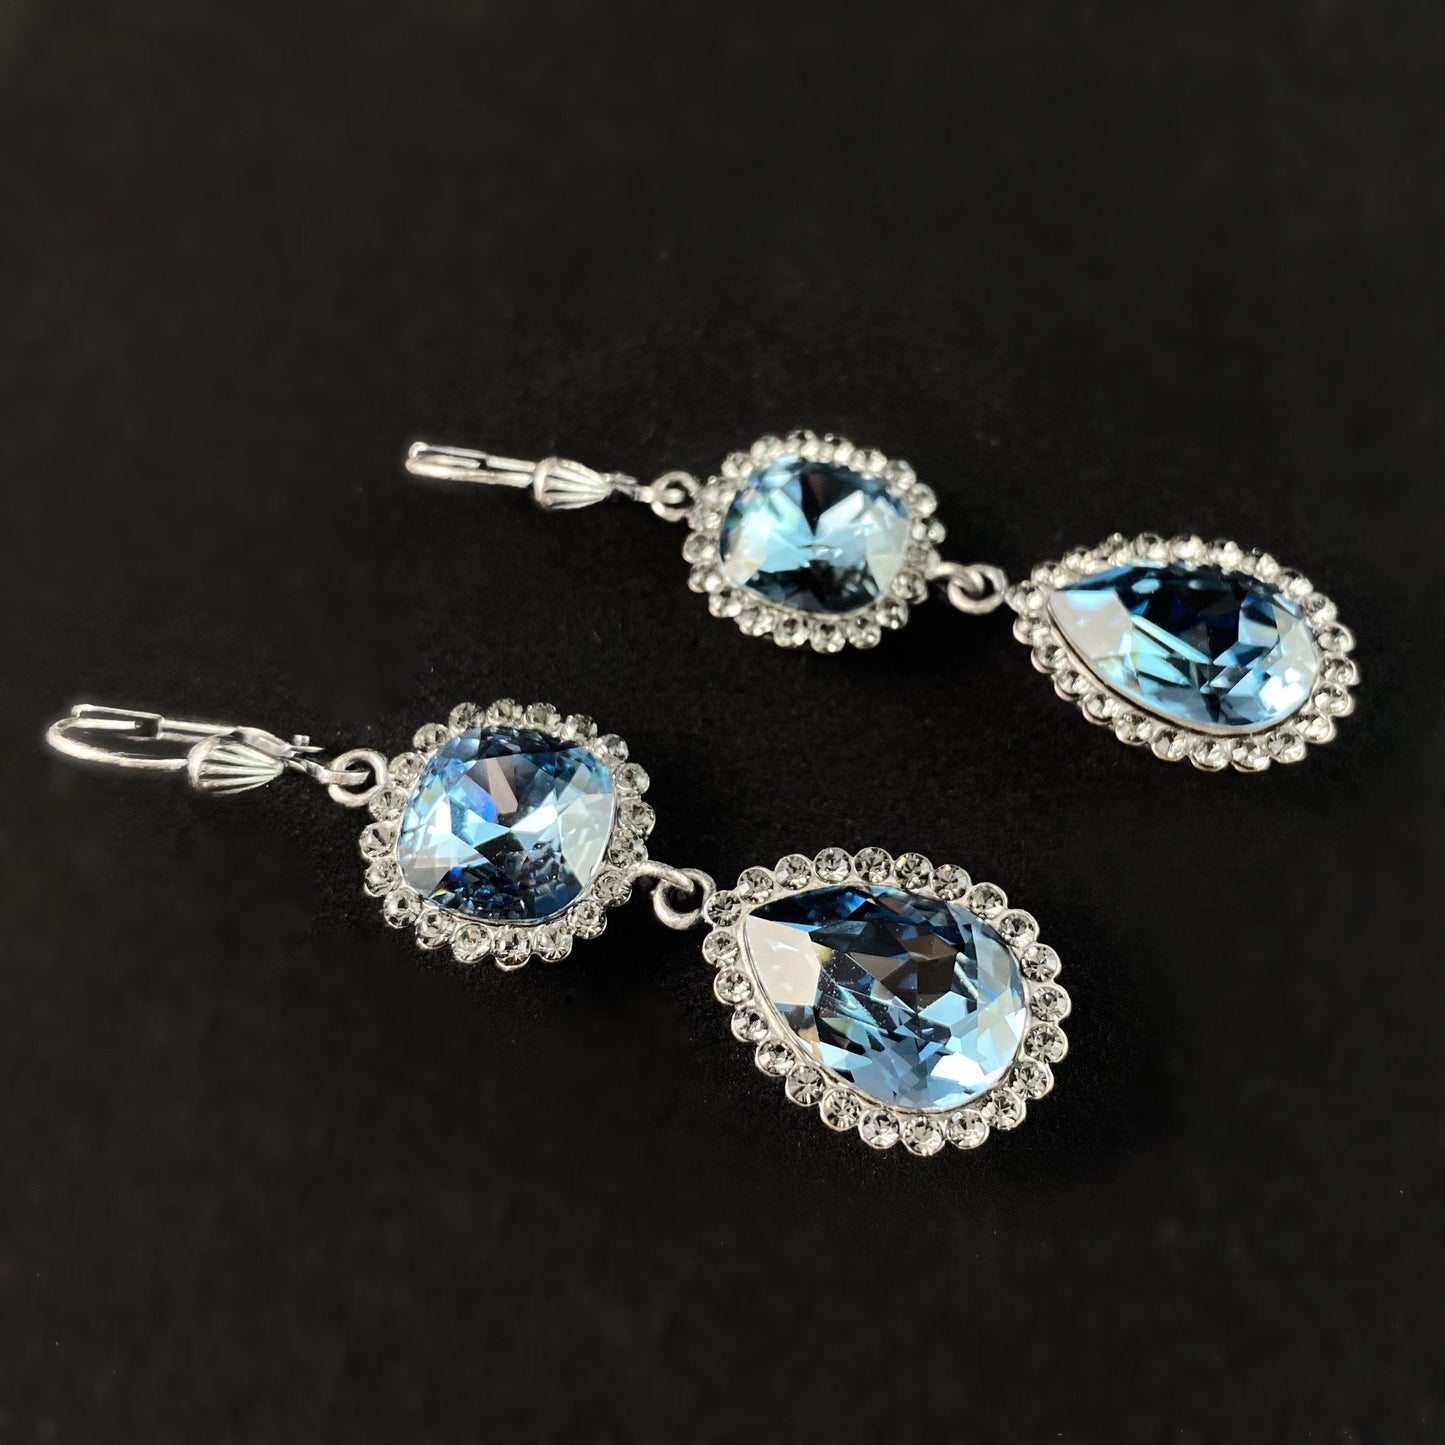 Pear Cut Swarovski Crystal Teardrop Earrings, Light Blue - La Vie Parisienne by Catherine Popesco